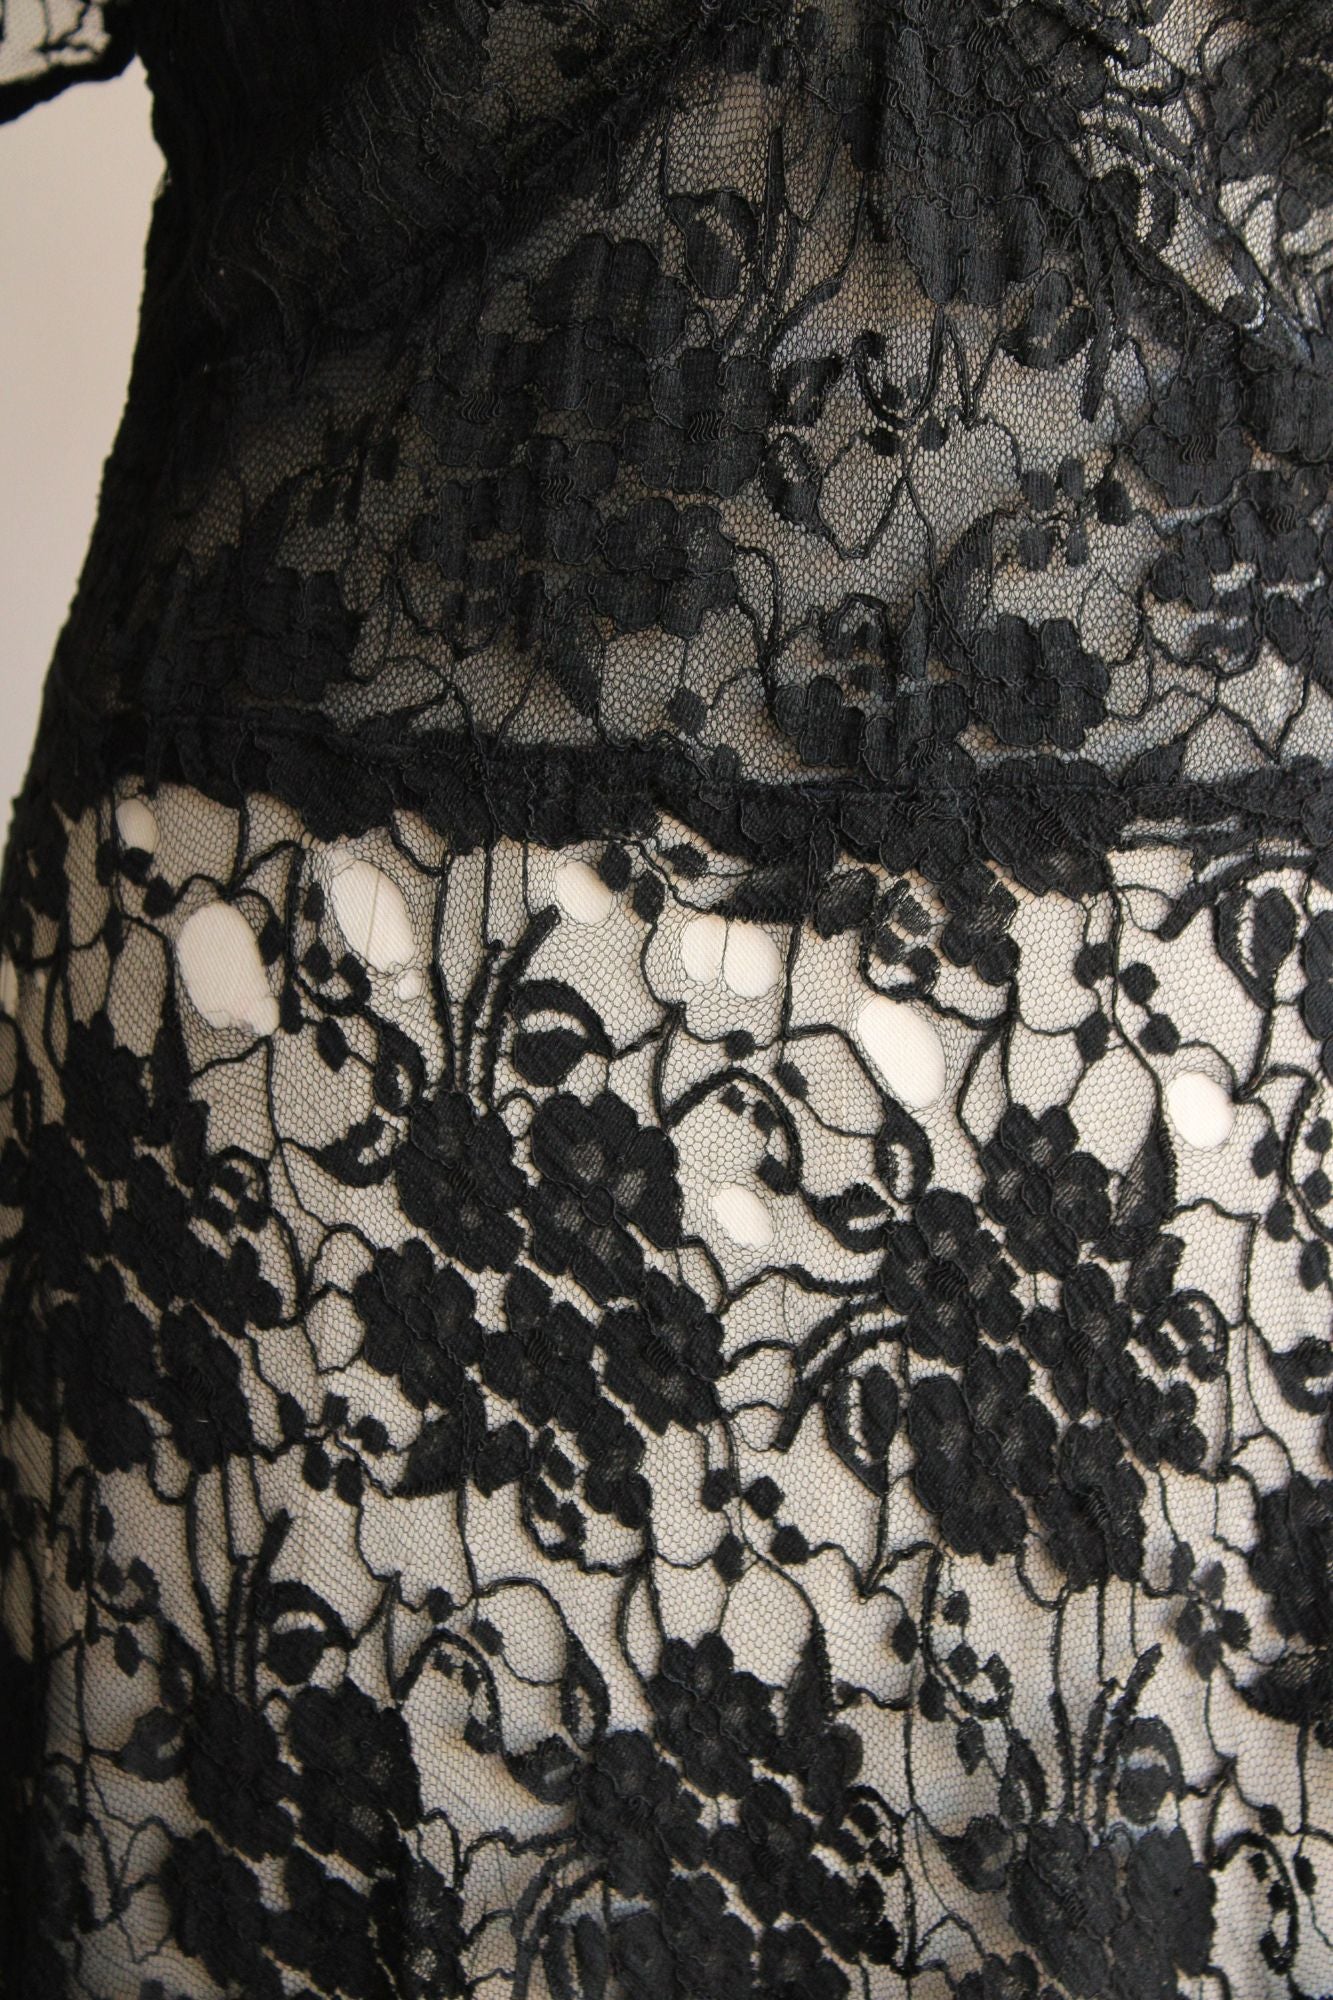 Vintage 1940s  Black Lace Dress